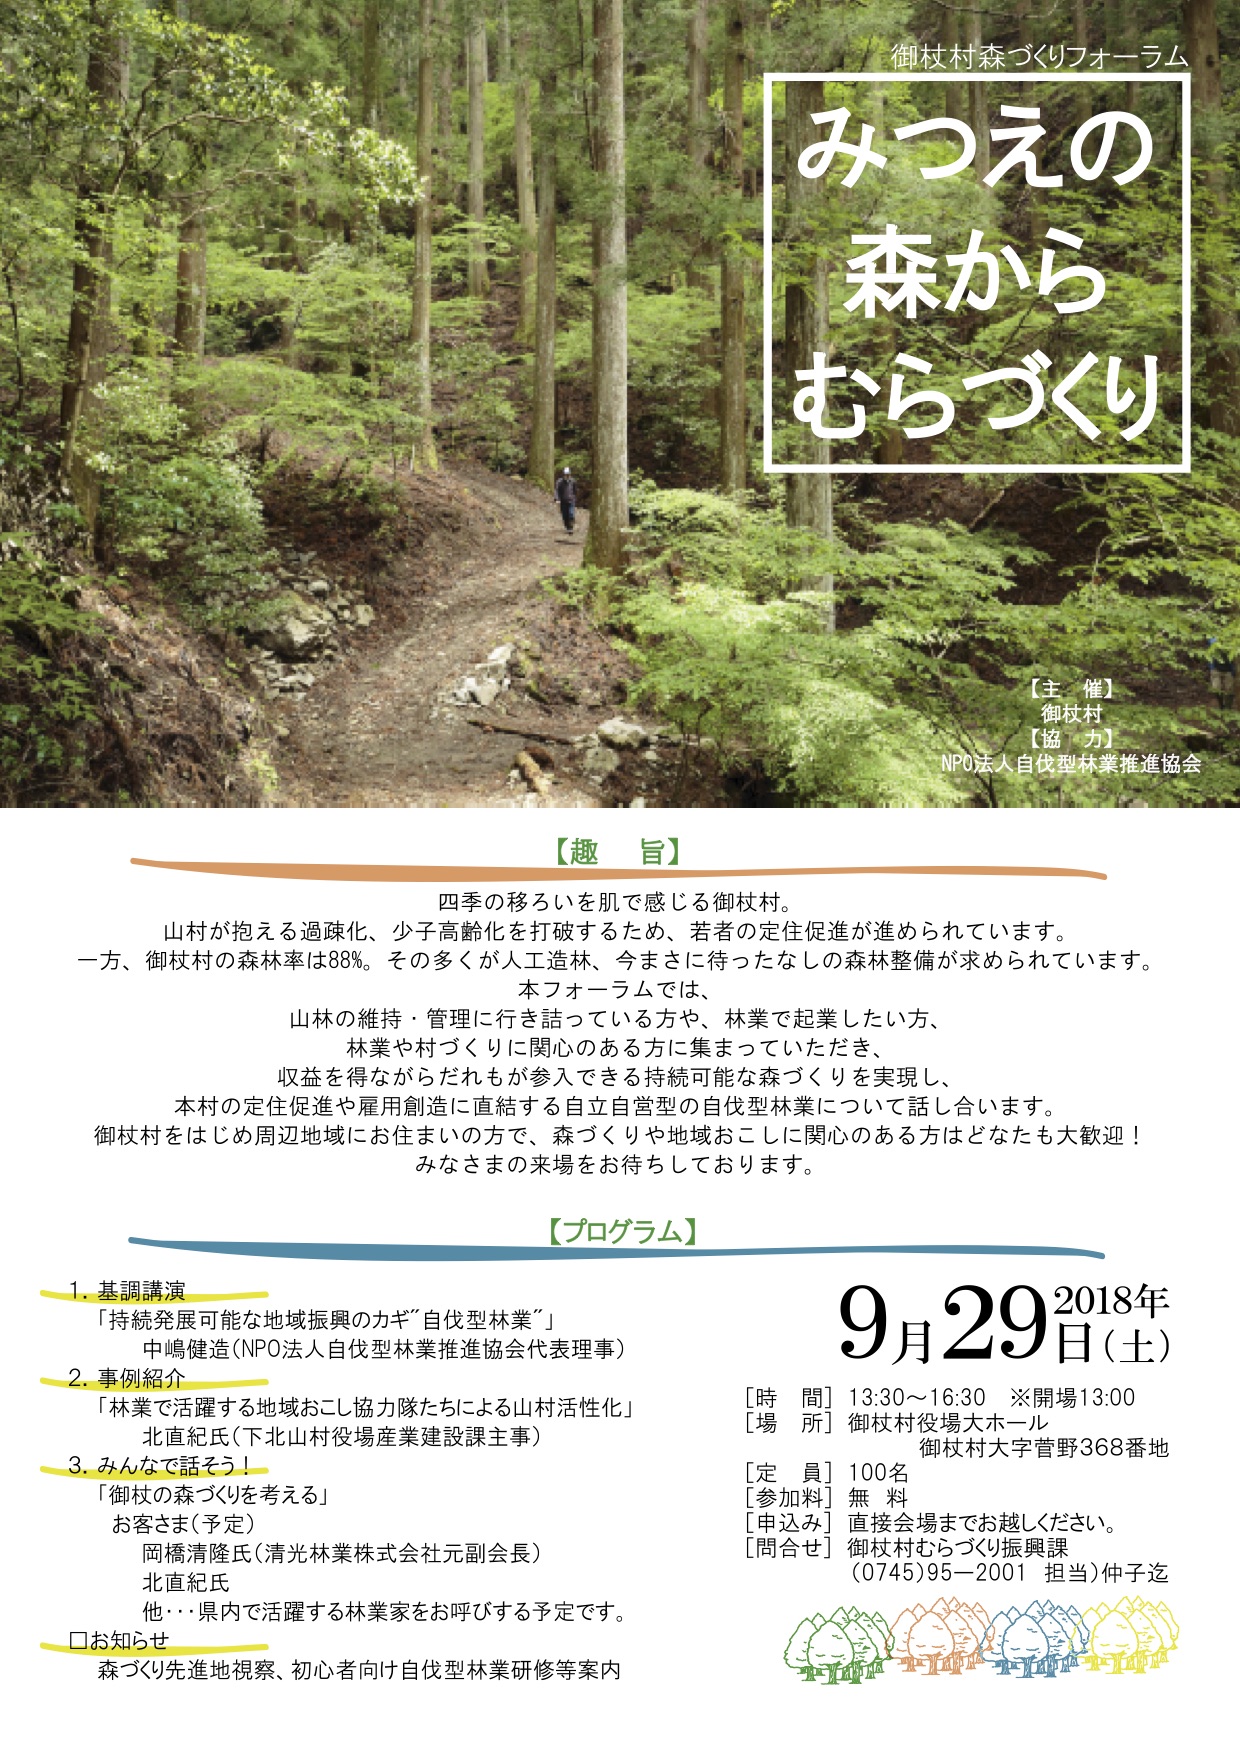 奈良県御杖村にて「御杖村森づくりフォーラム〜みつえの森からむらづくり〜」が開催されます